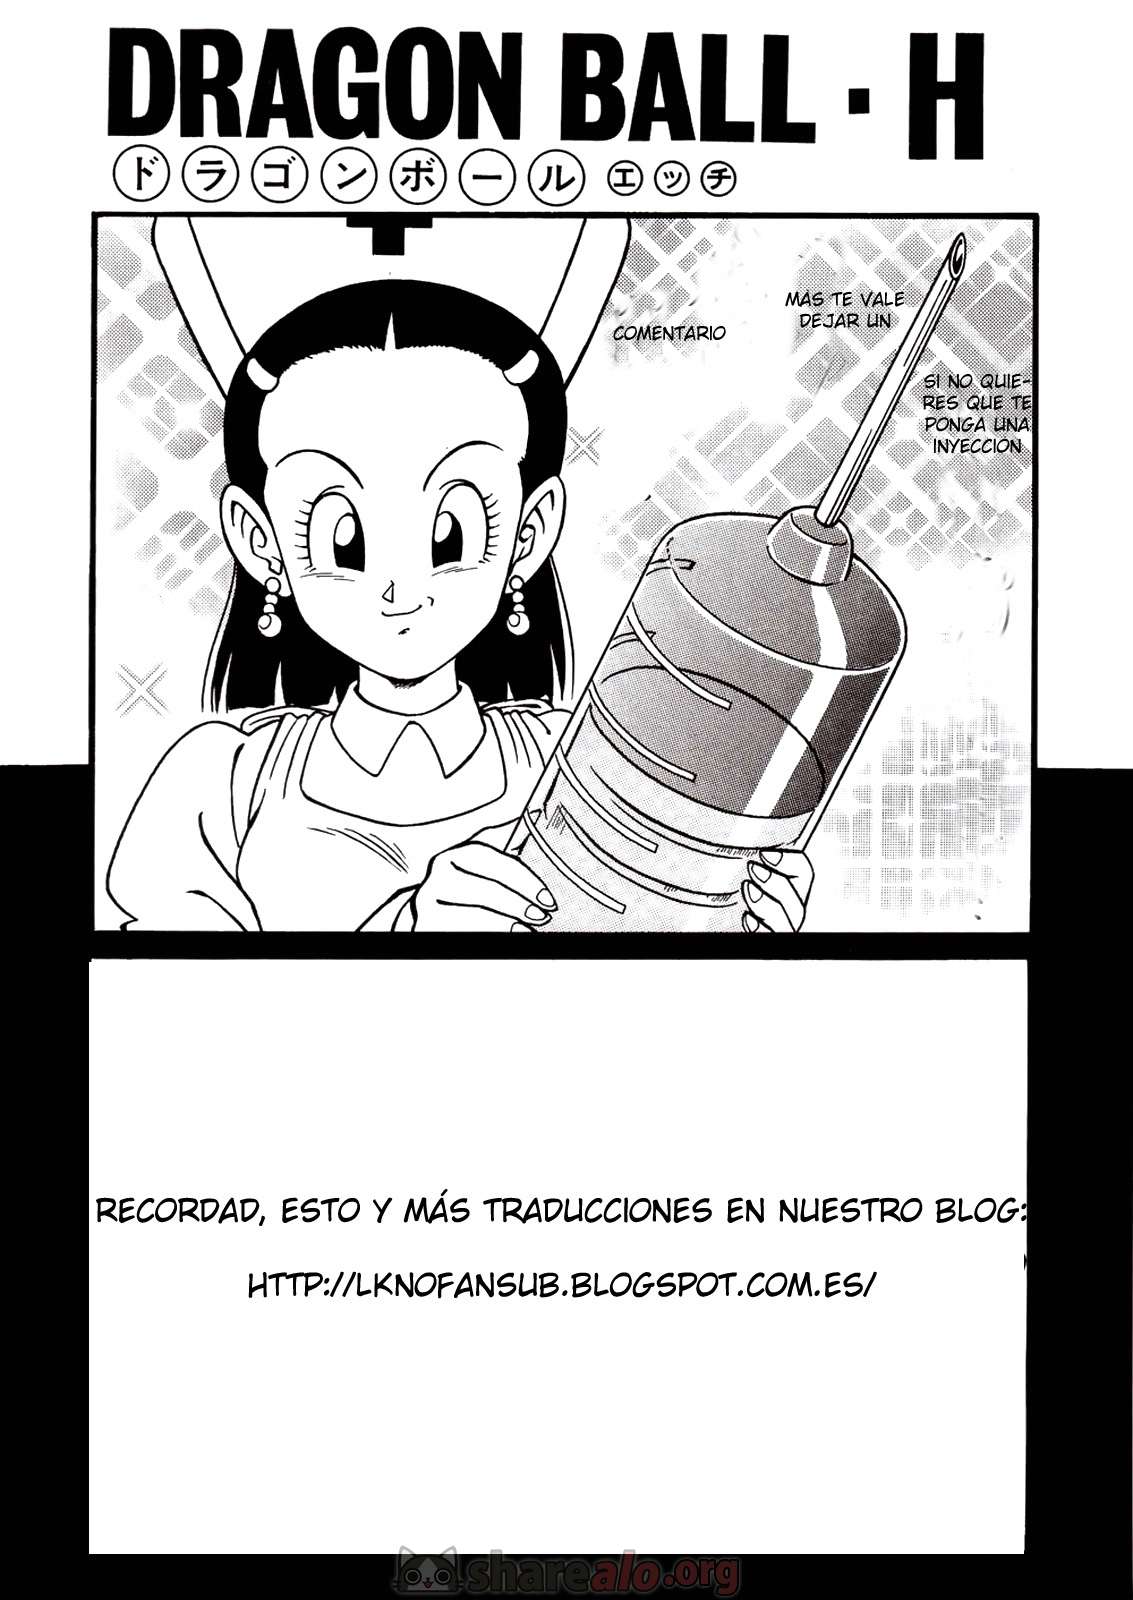 Dragon Ball H Edición Extra  - Imagen 17  - Comics Porno - Hentai Manga - Cartoon XXX